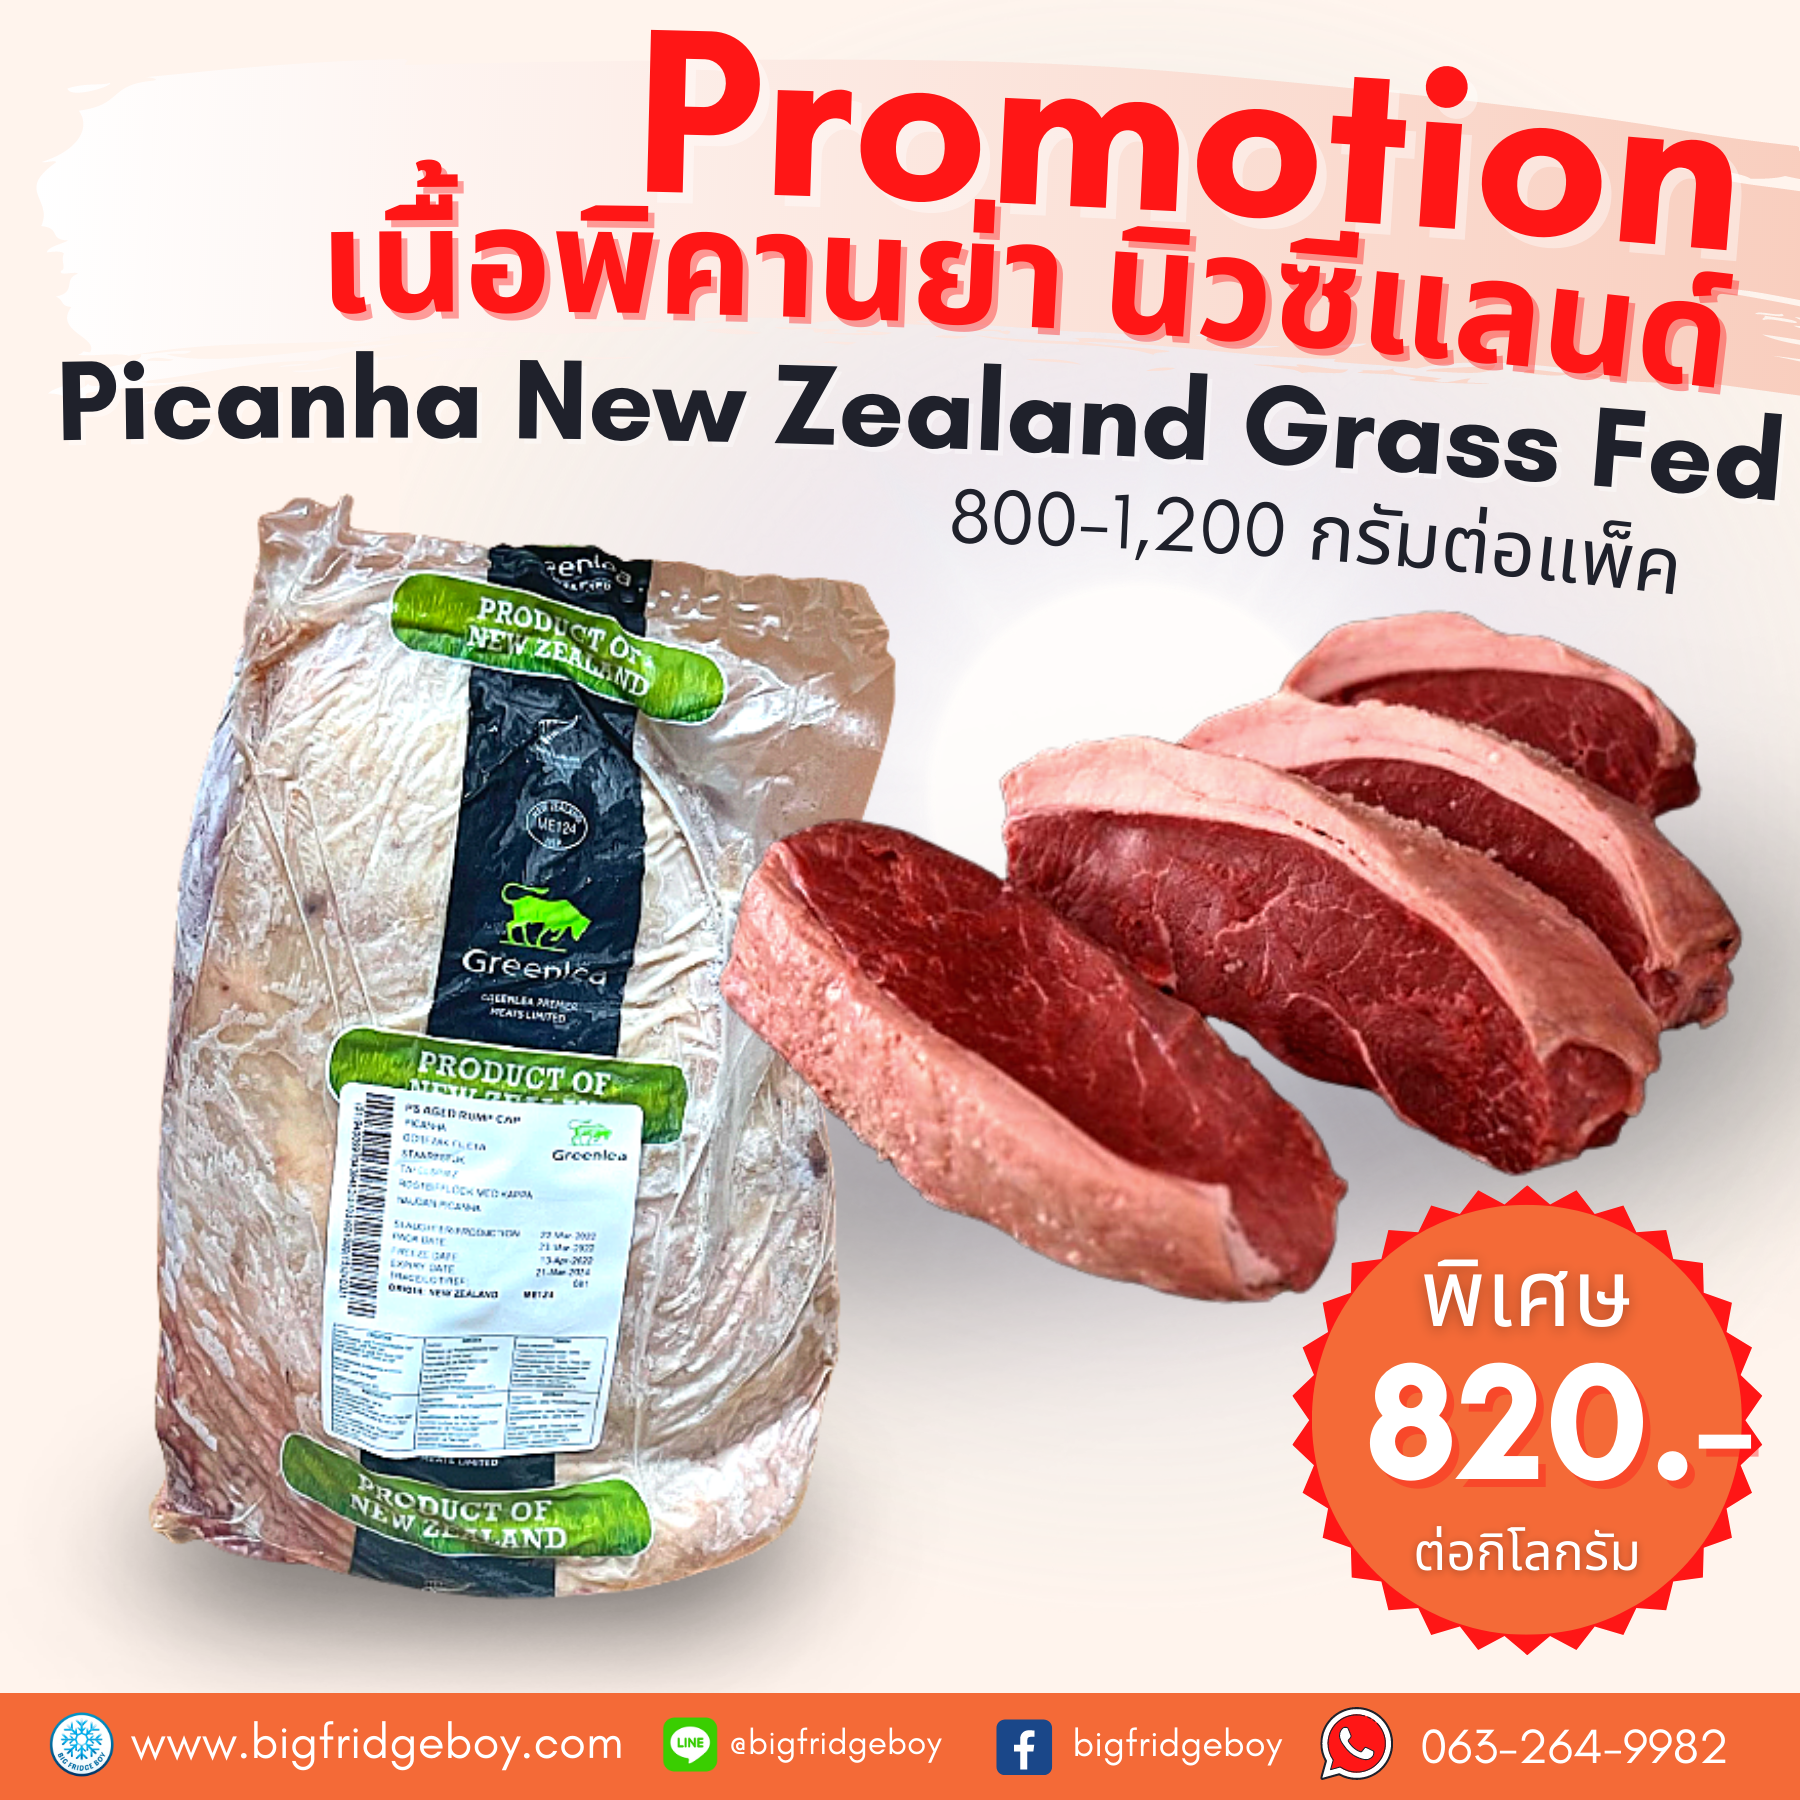 เนื้อพิคานย่า นิวซีแลนด์ (Picanha New Zealand Grass Fed)